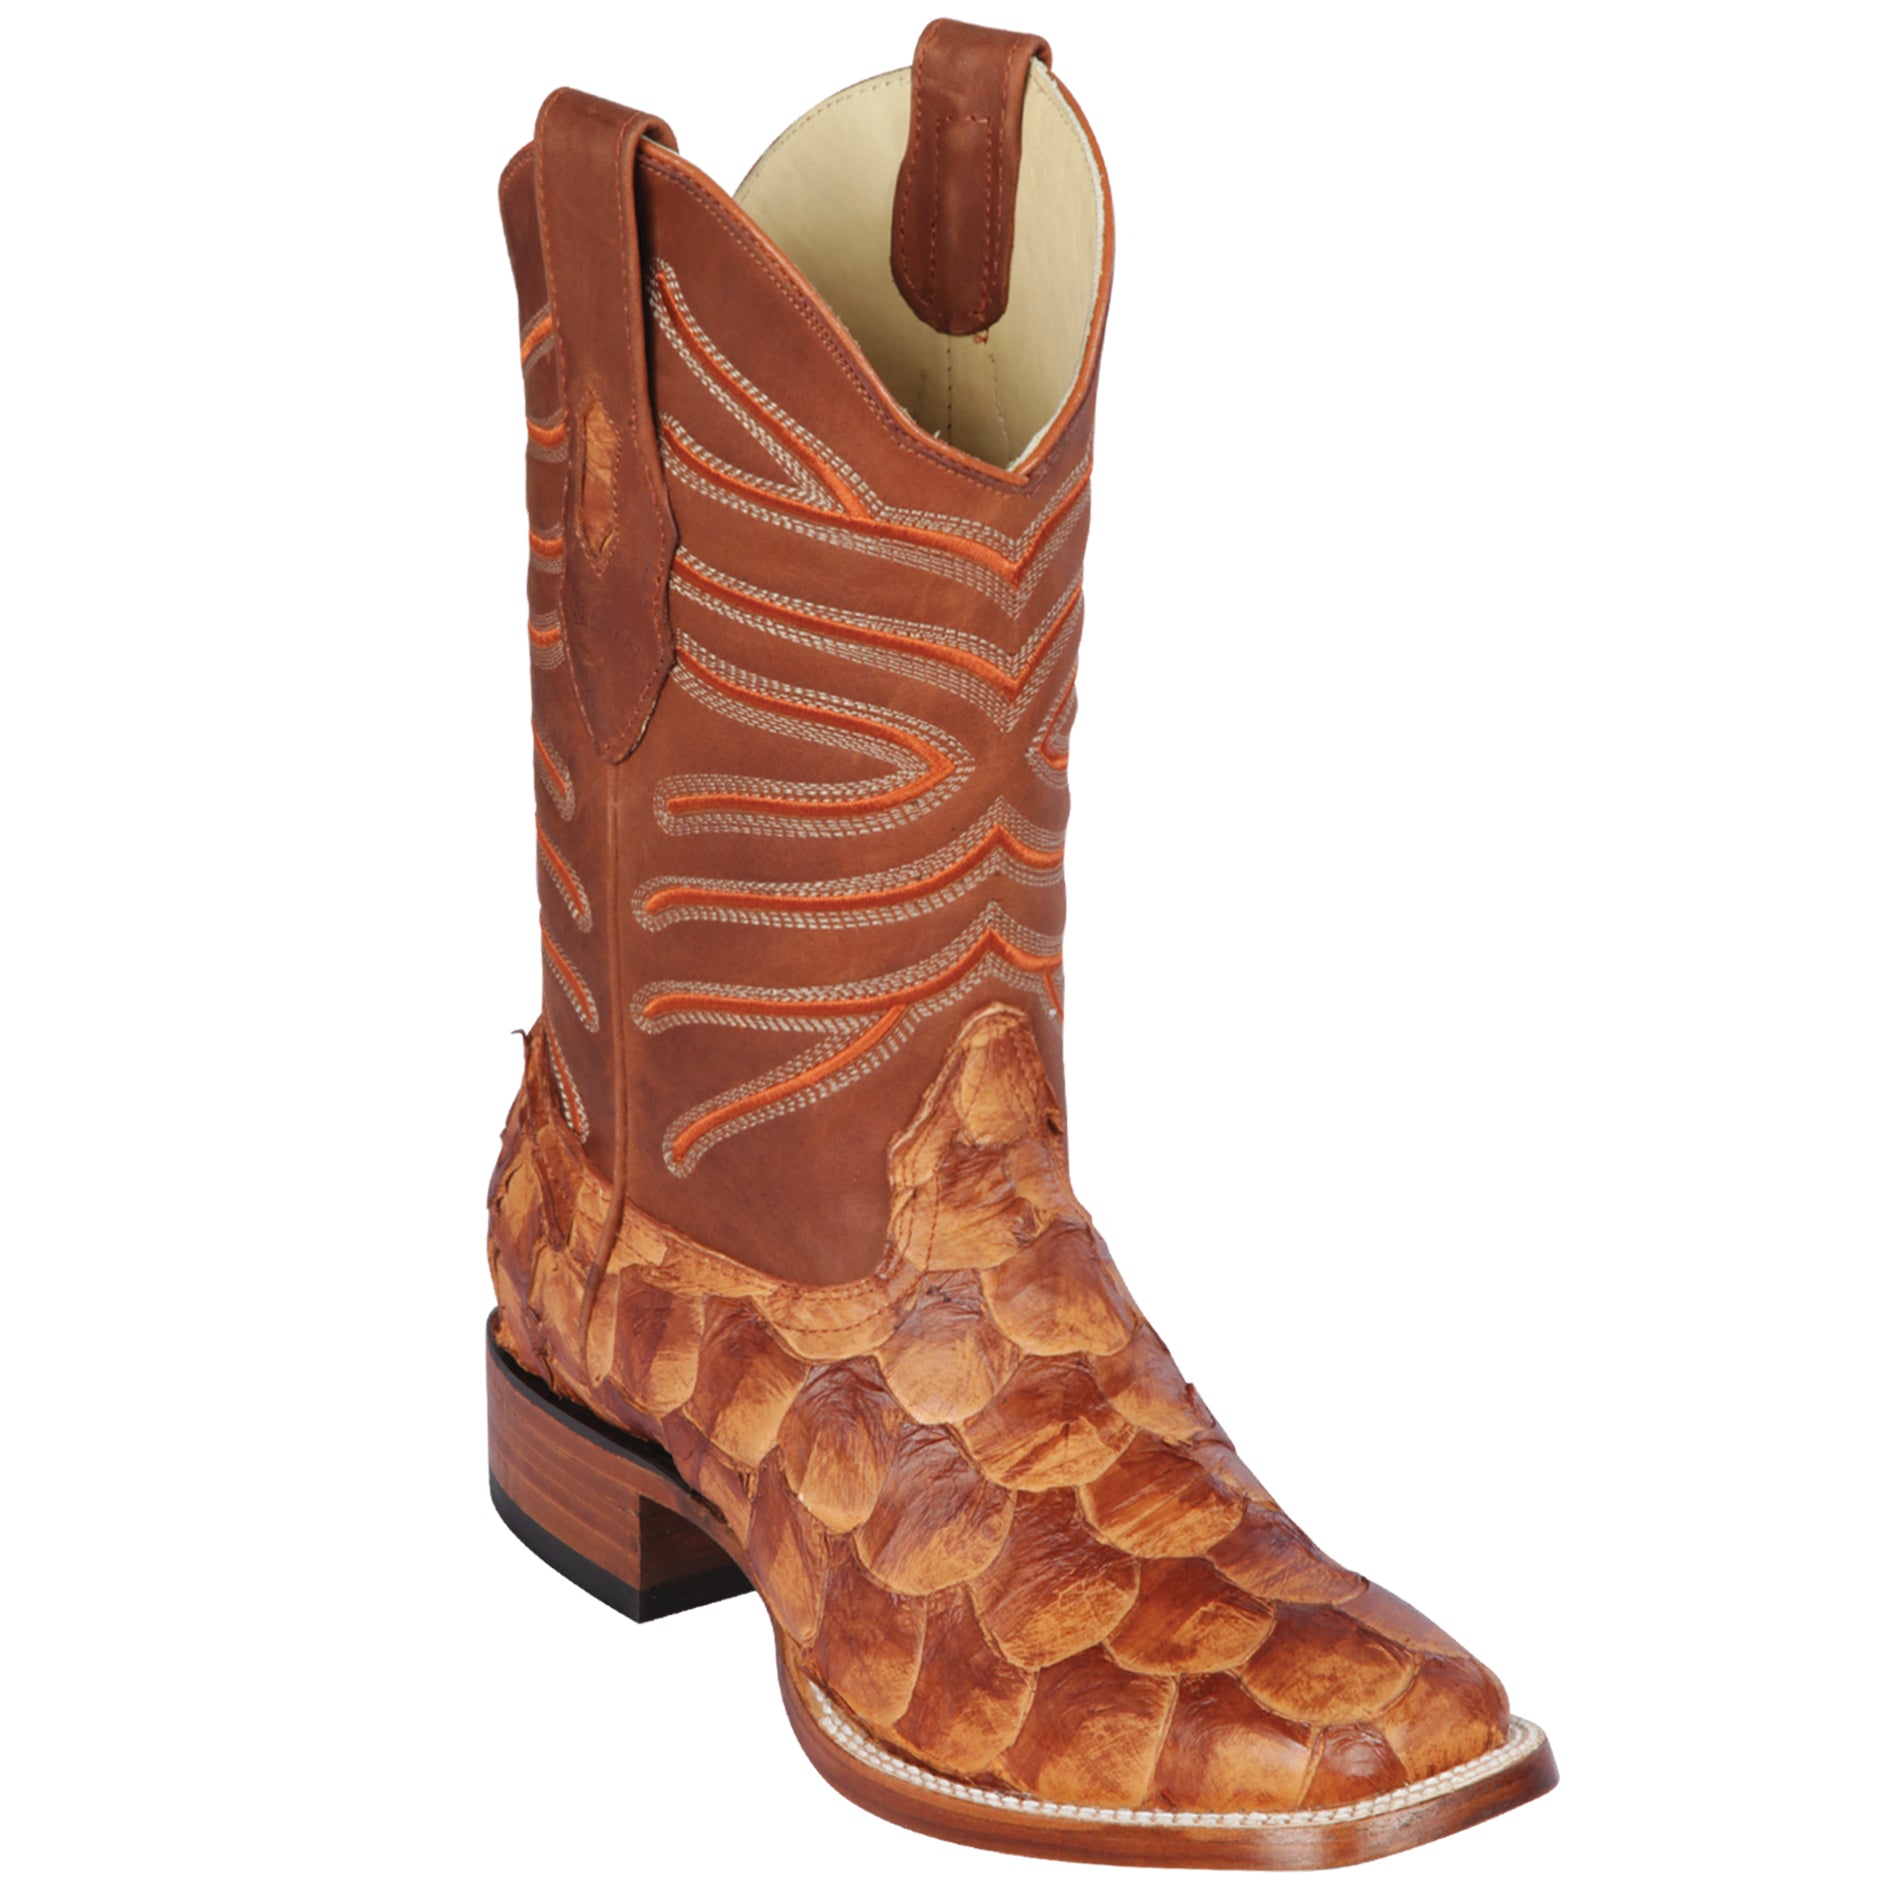 Pirarucu fish boots cognac color from Los Altos Boots
